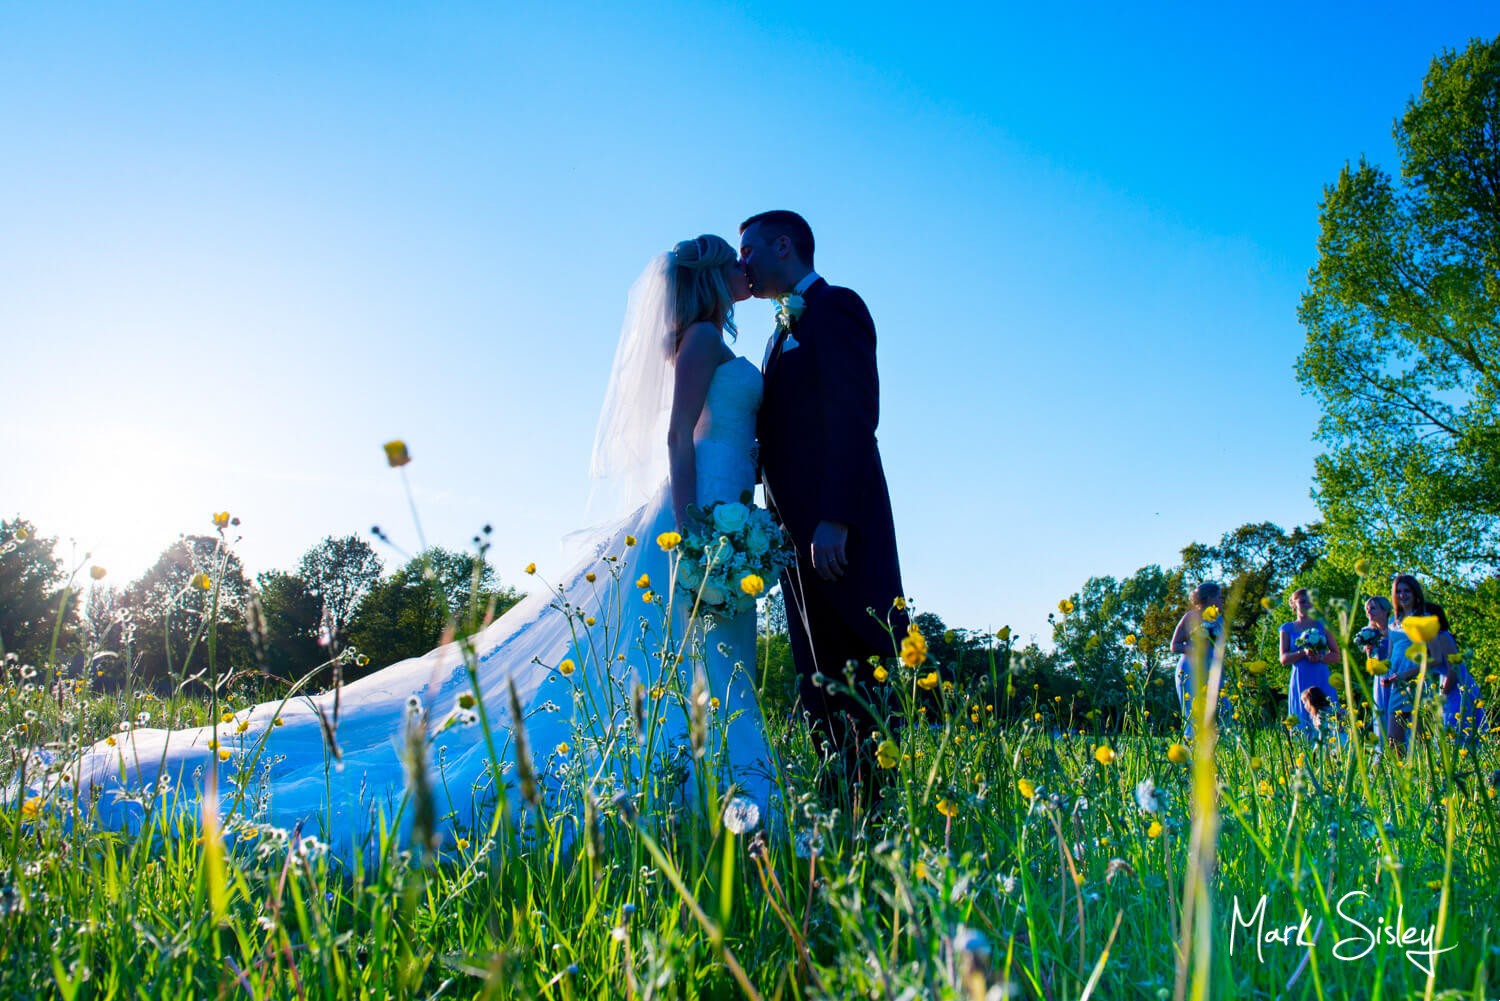 Dorton House wedding photos in the wild flower field